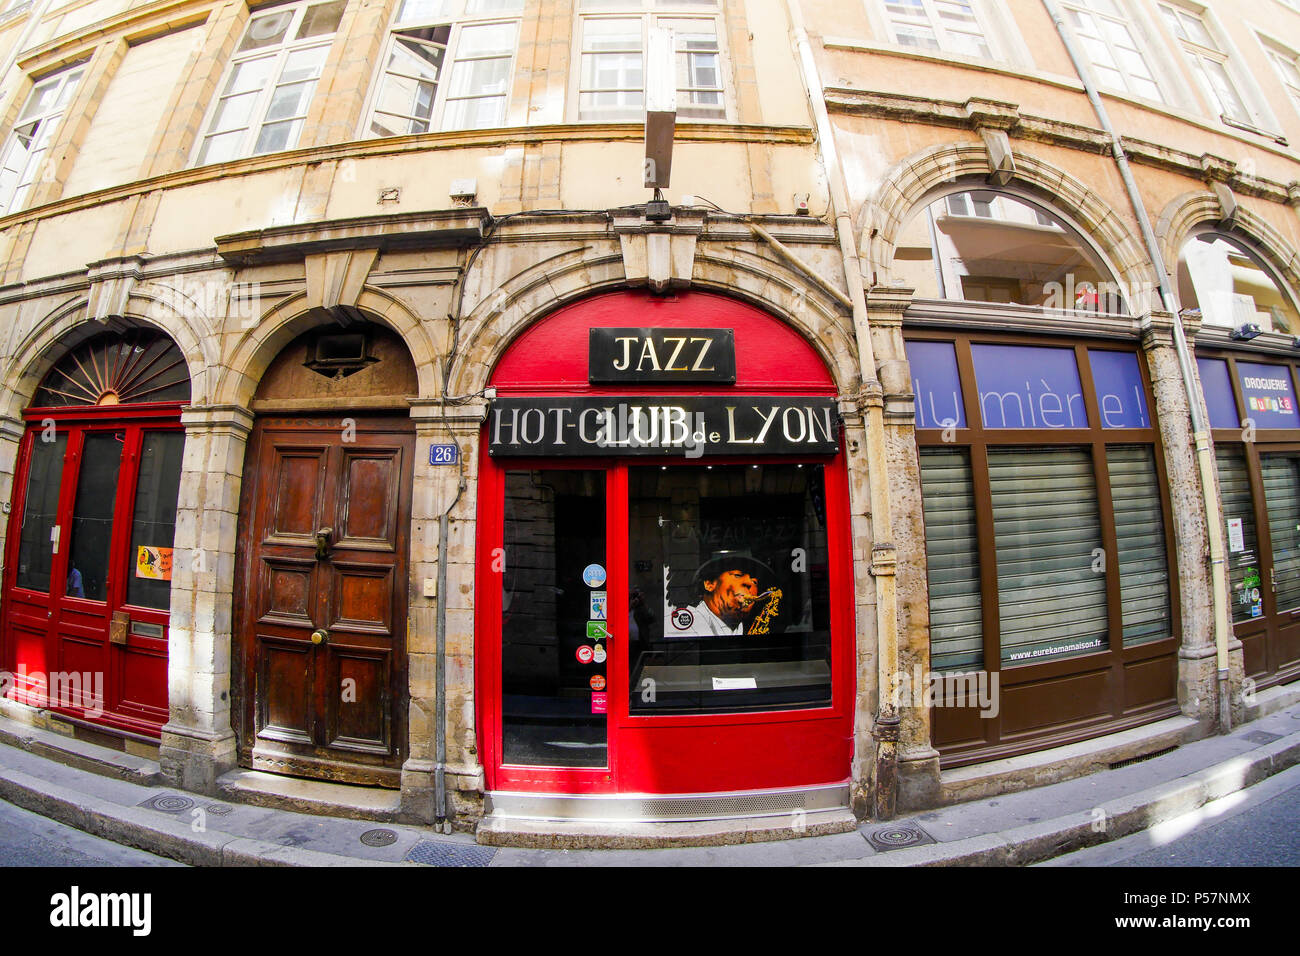 Hot Club - jazz club Lyon, France Stock Photo - Alamy